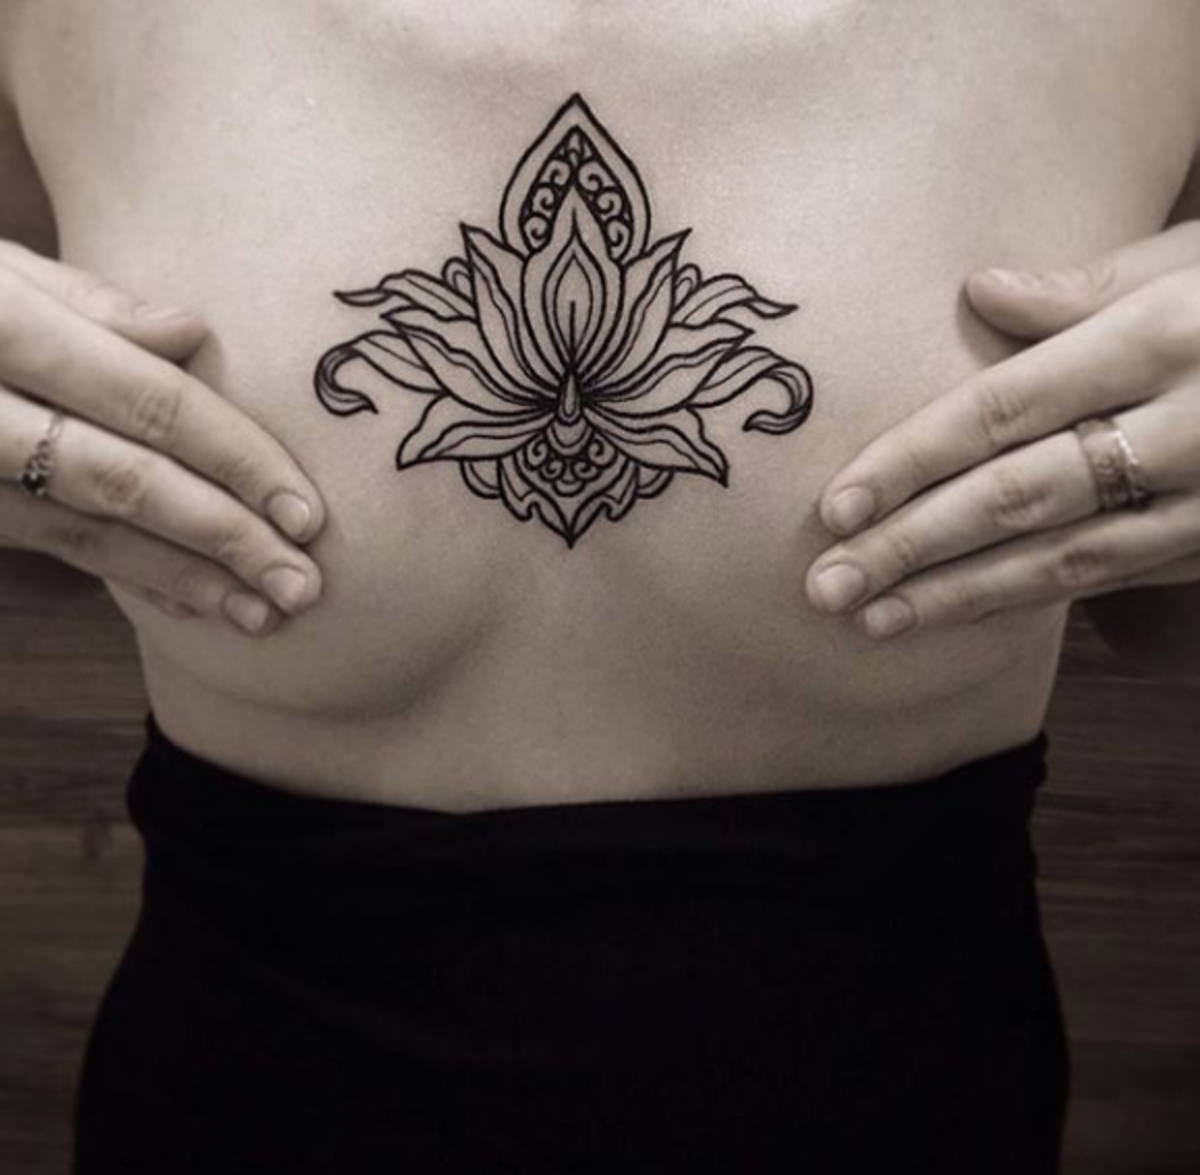 tetoválás, tetoválóművész, tetoválásötlet, tetoválás -inspiráció, tetoválástervezés, tintával, inkedmag, tetoválás nőknek, női tetoválás